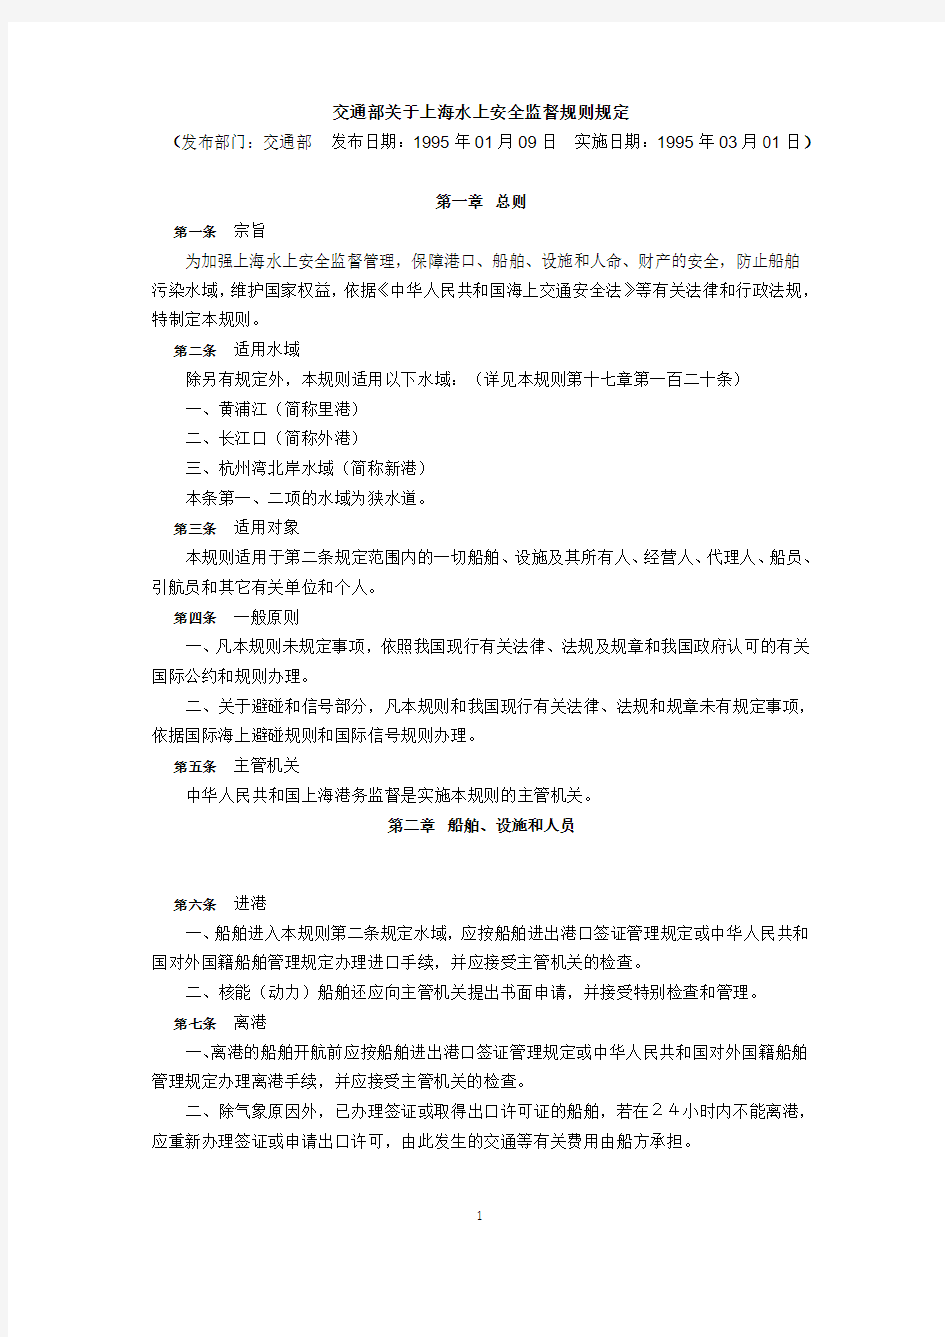 交通部关于上海水上安全监督规则规定